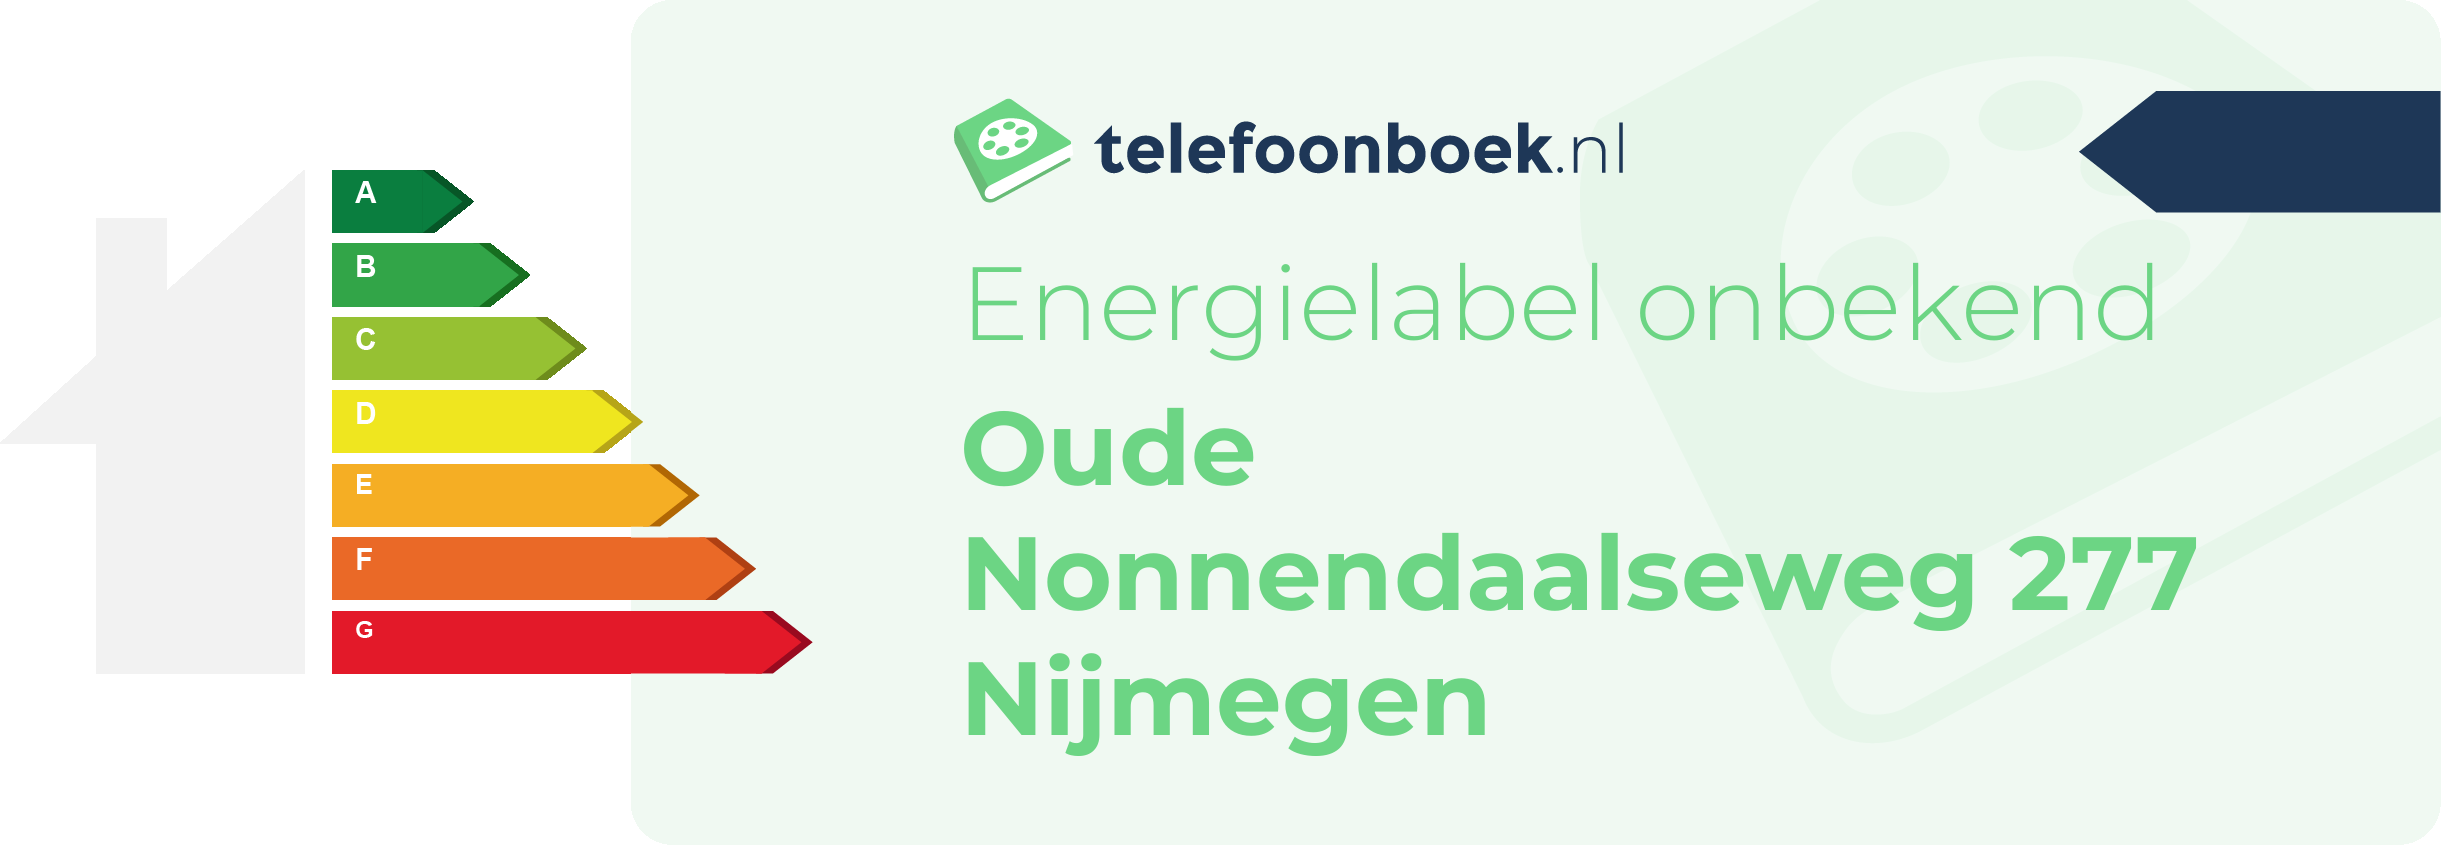 Energielabel Oude Nonnendaalseweg 277 Nijmegen